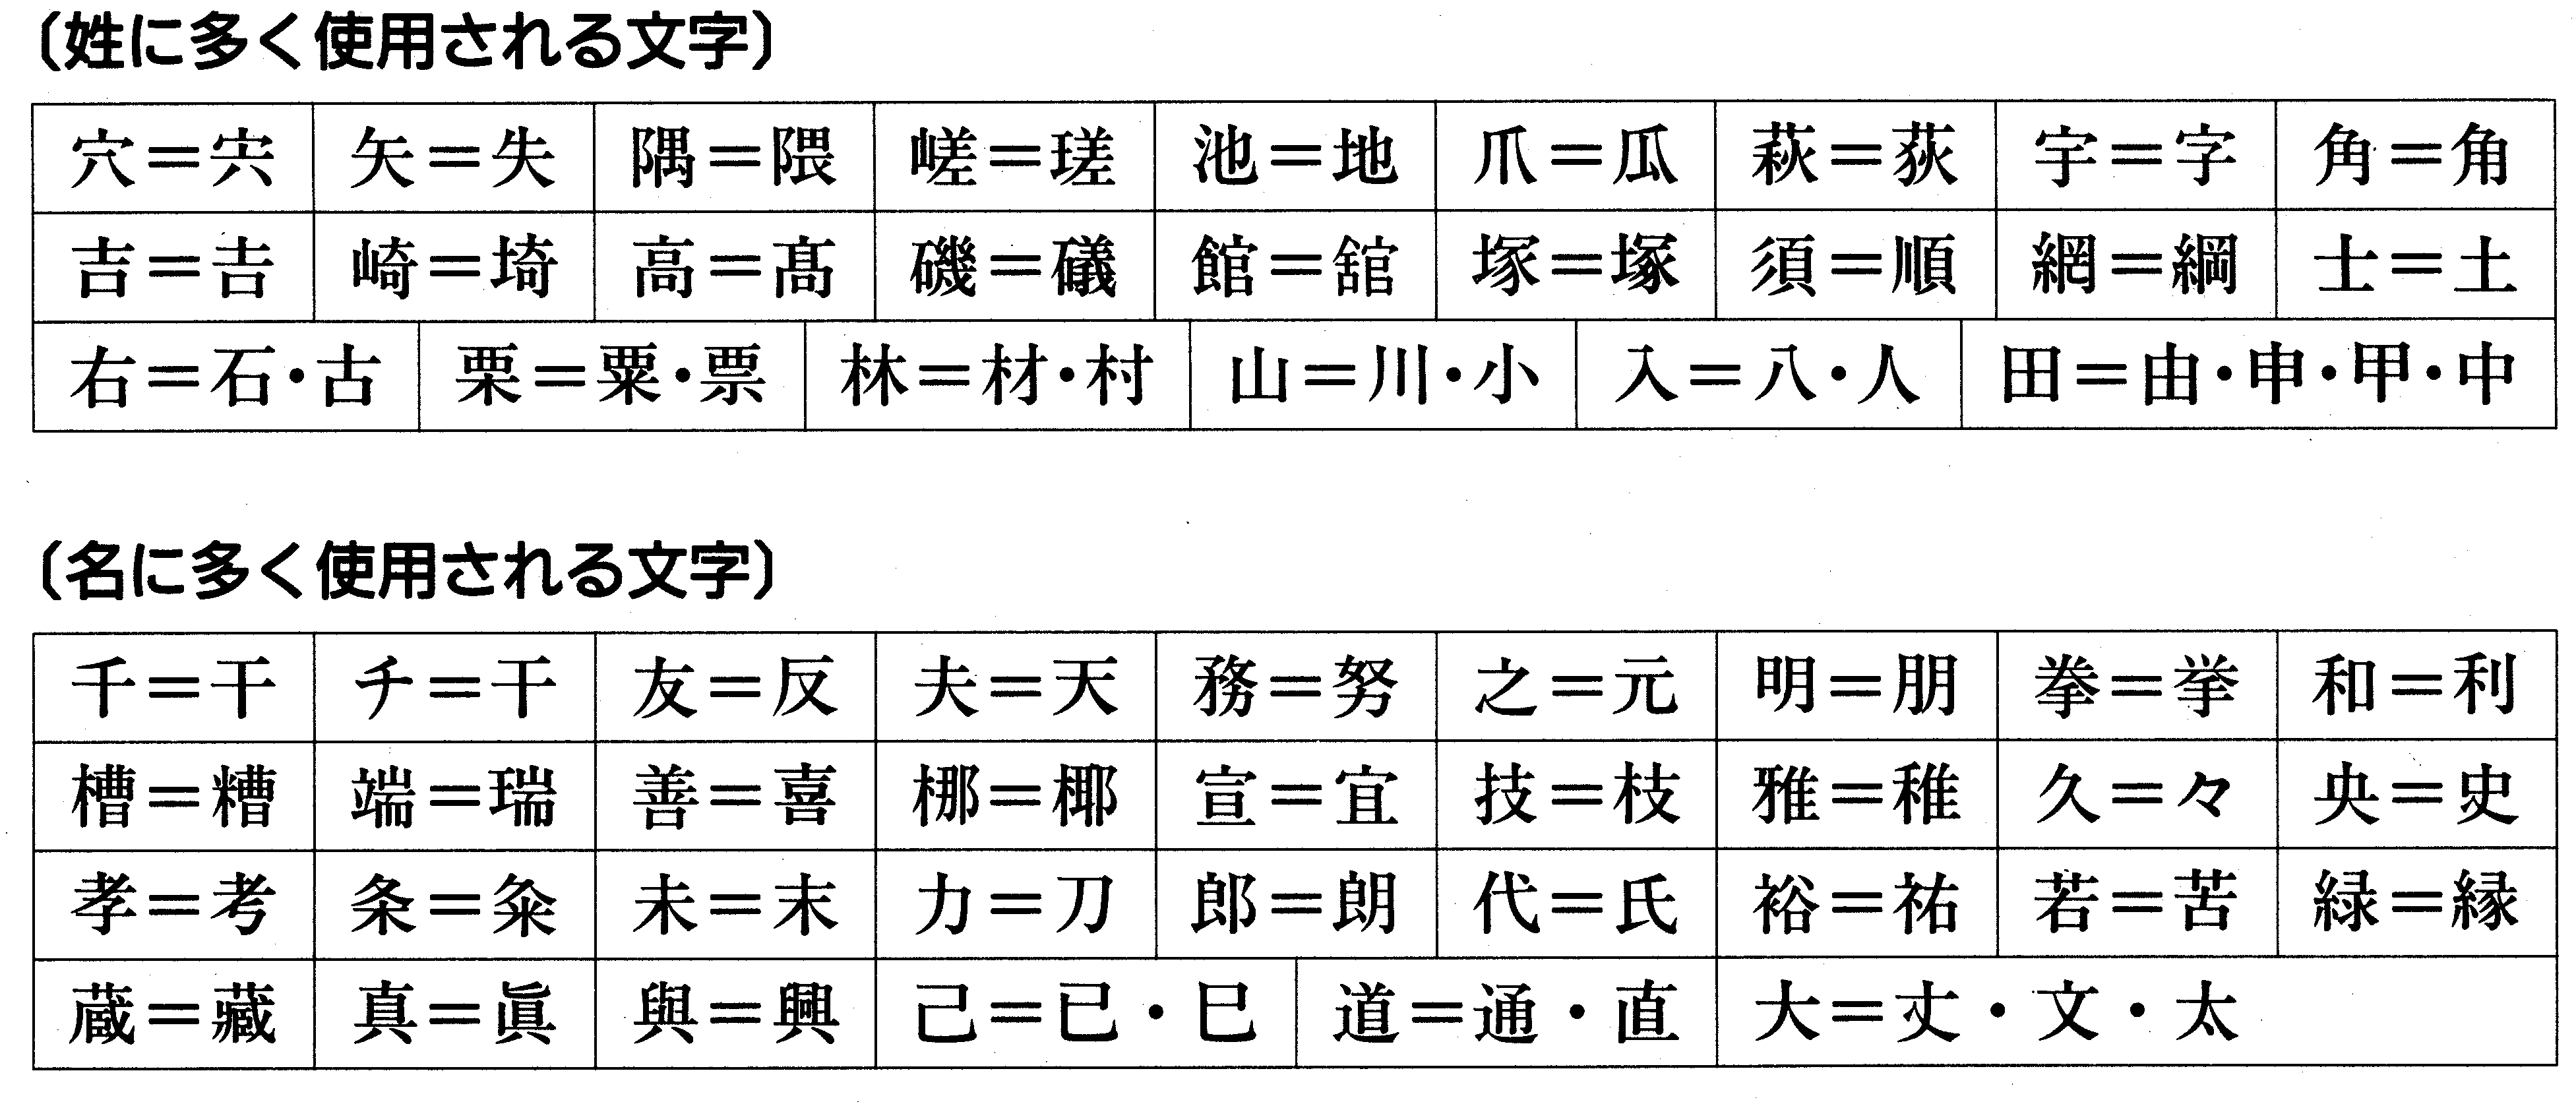 席次表での外字 旧字の使い方と間違いやすい漢字 結婚式のお役立ちガイド Cocona